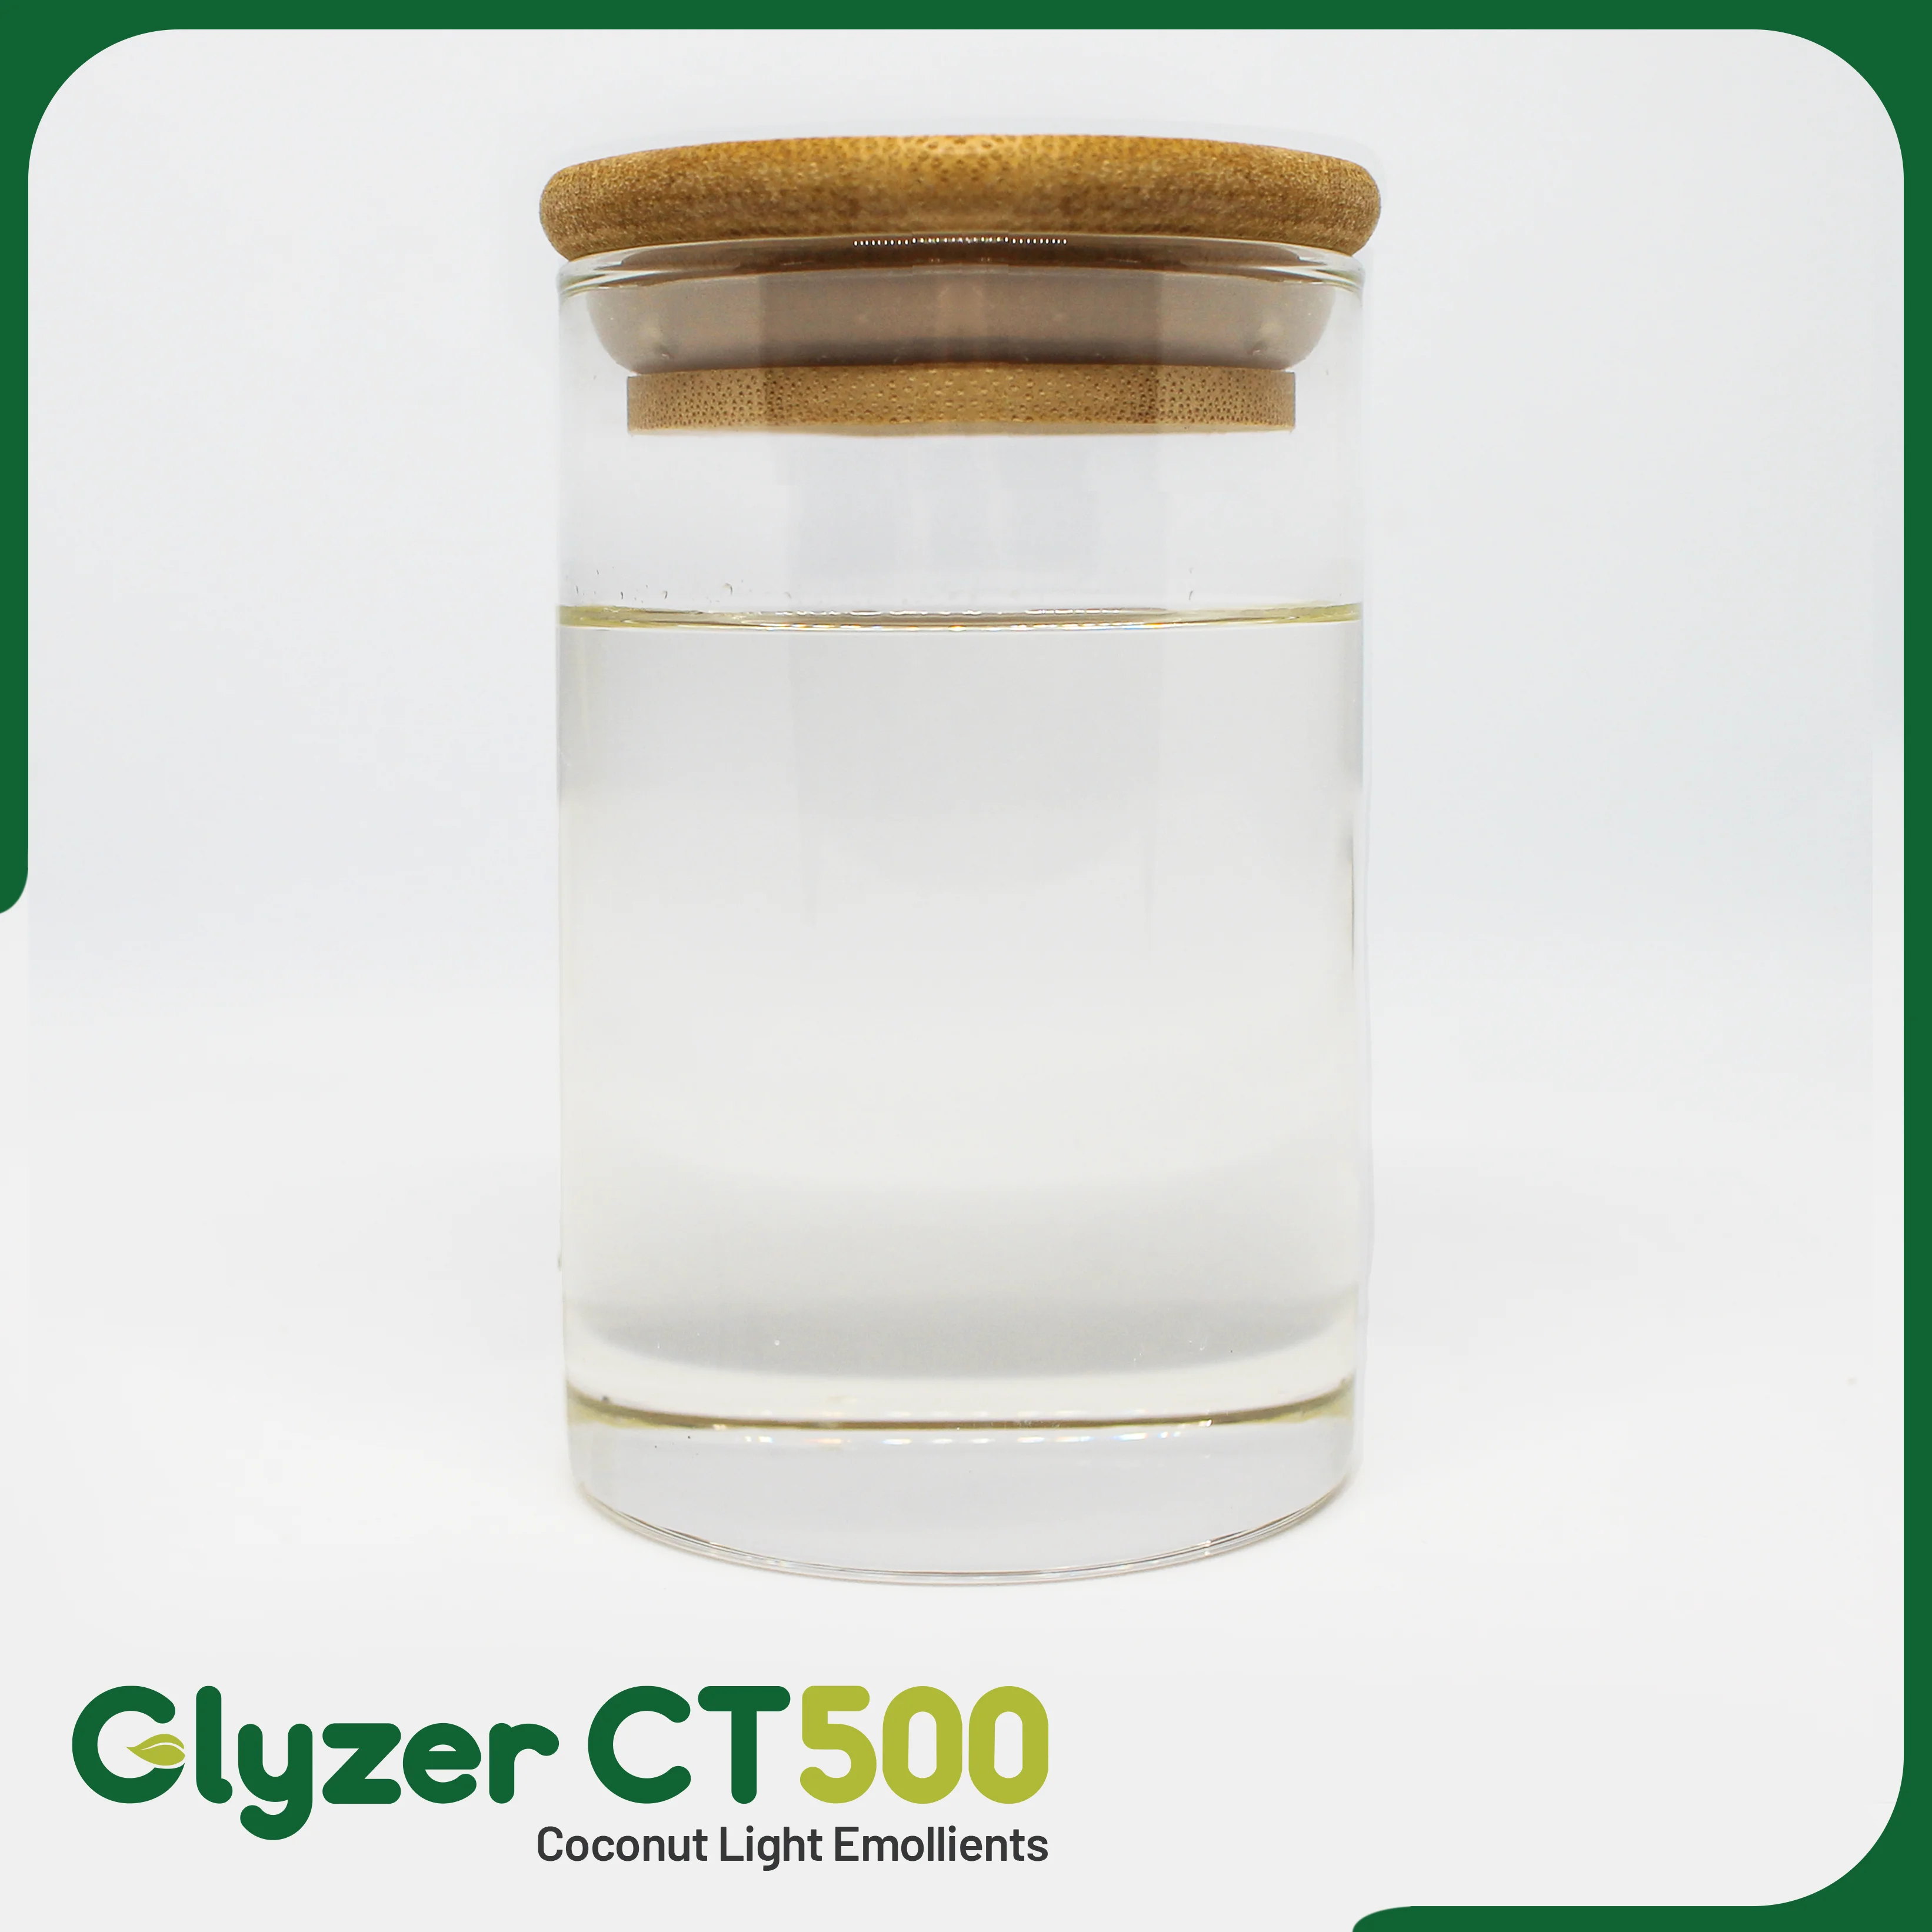 Glyzer-CT500